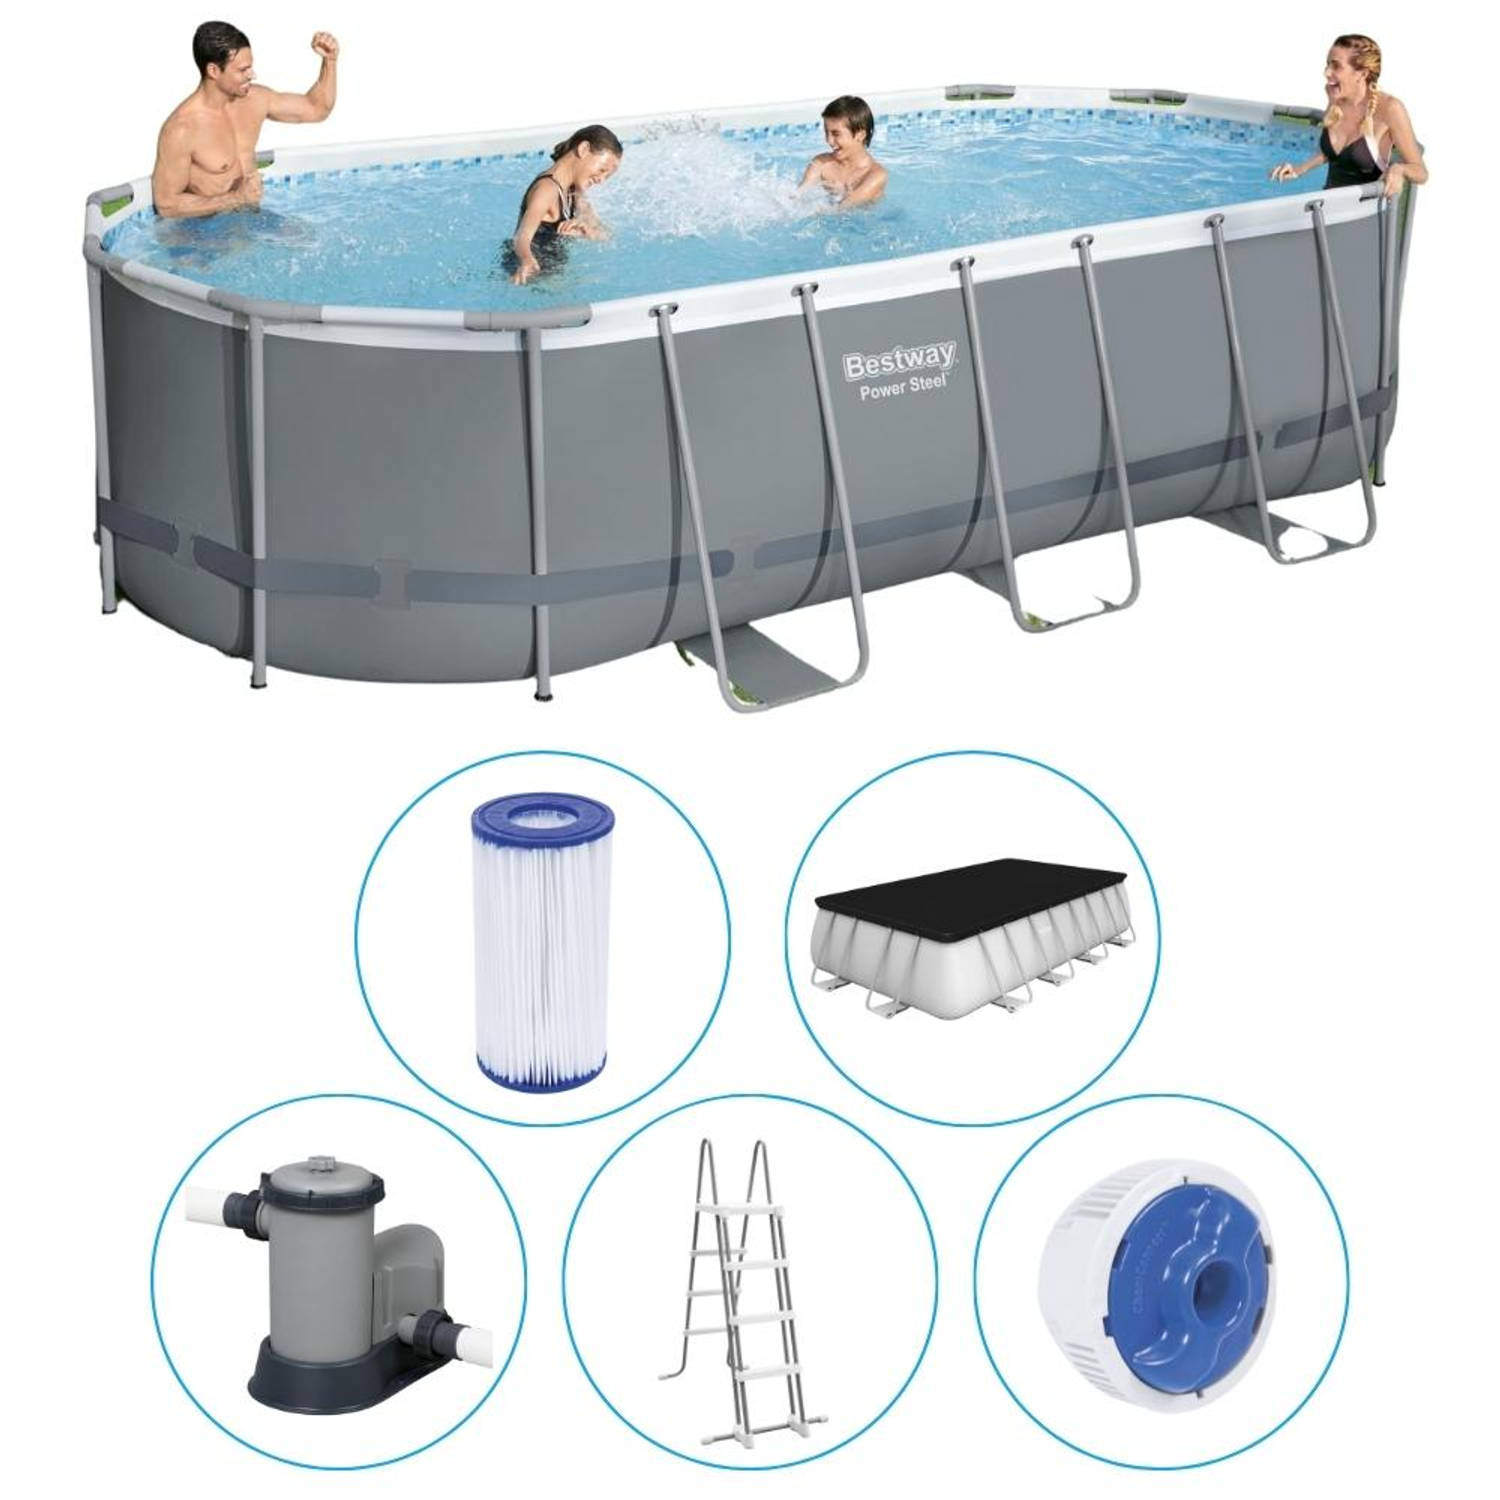 Bestway - Power Steel - Opzetzwembad inclusief filterpomp en accessoires - 549x274x122 cm - Rechthoekig aanbieding